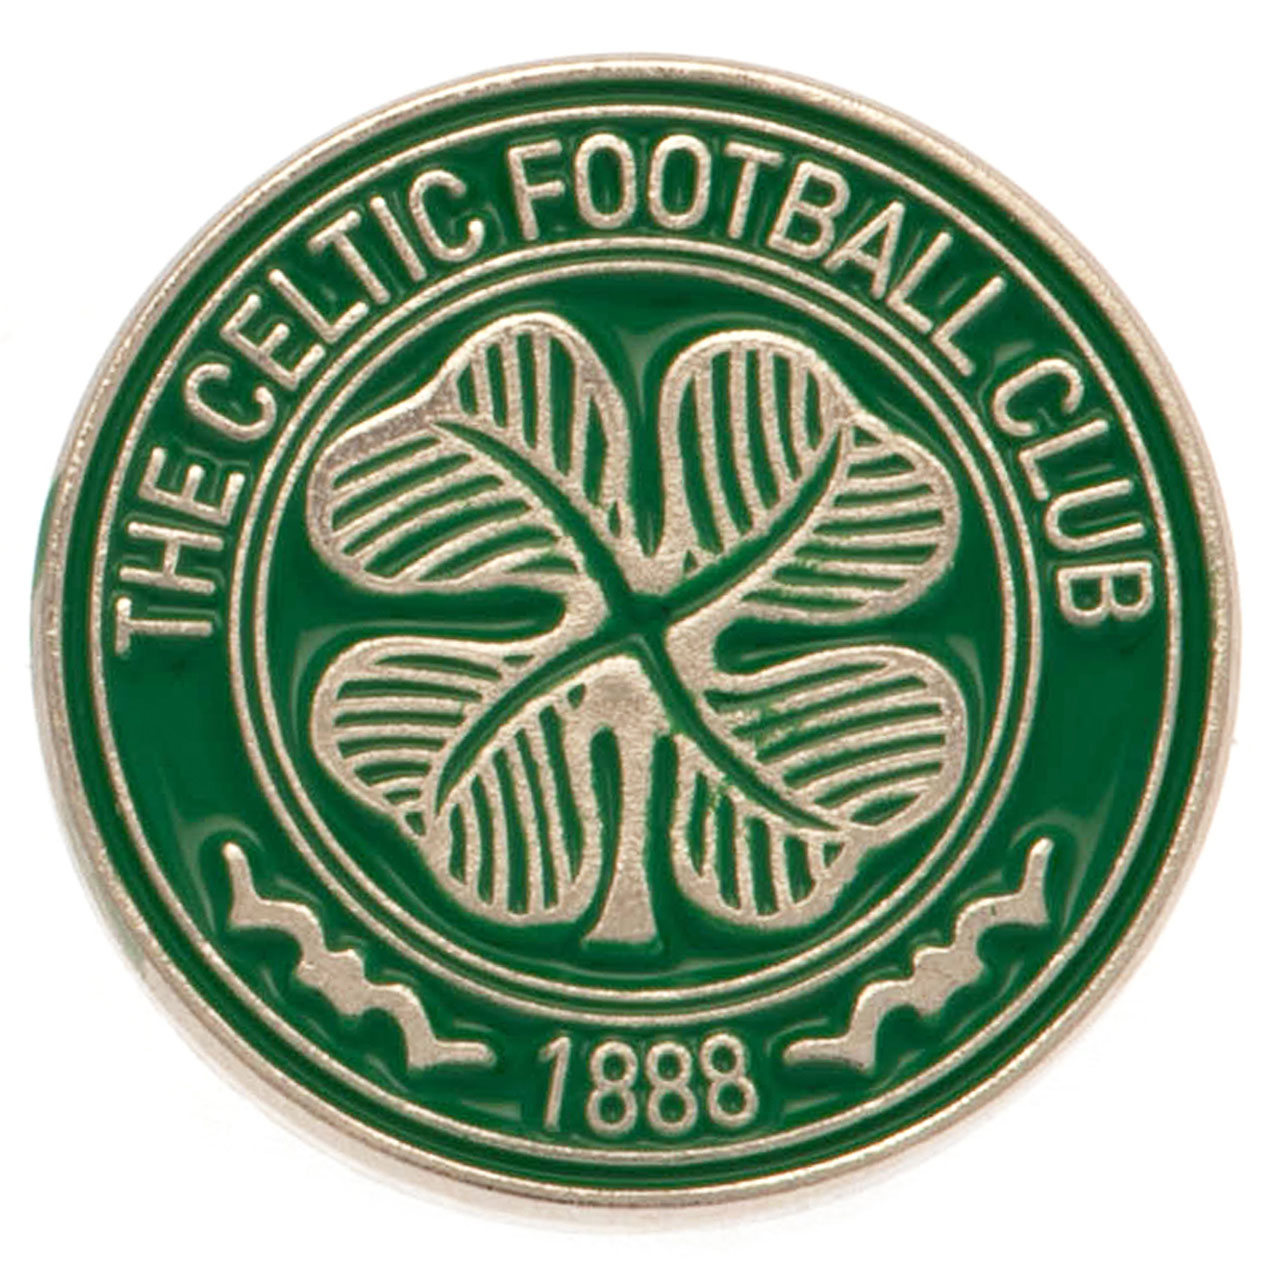 Celtic Fc Fan Club Logo Since 1888 - Retro  Samsung Galaxy Phone